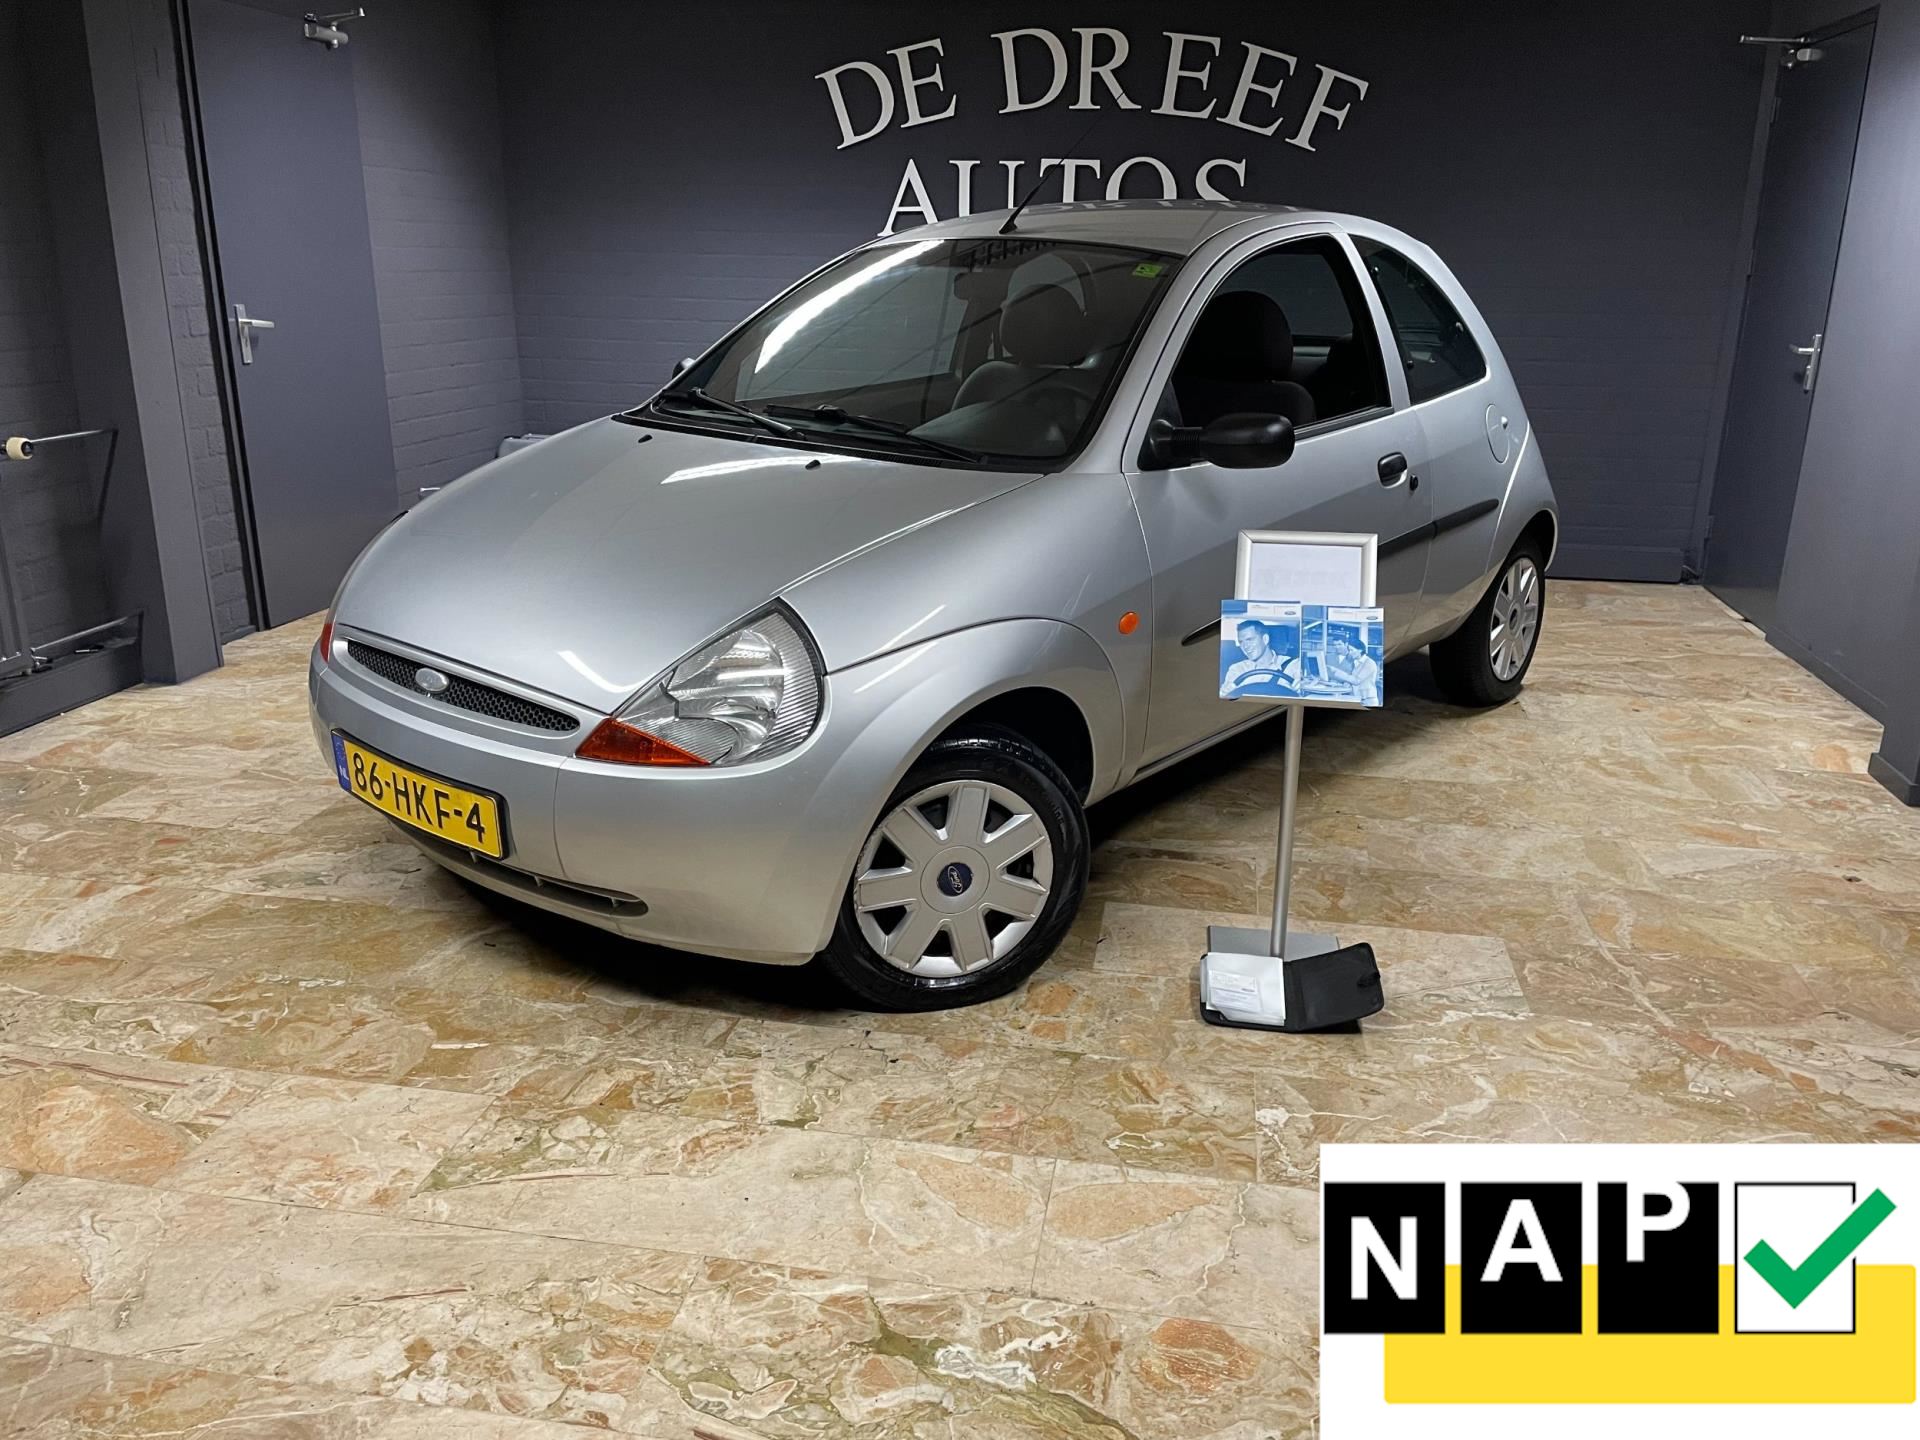 vergroting toevoegen aan Idioot Ford Ka - 1.3 Cool & Sound Benzine uit 2008 - www.dedreefautos.nl